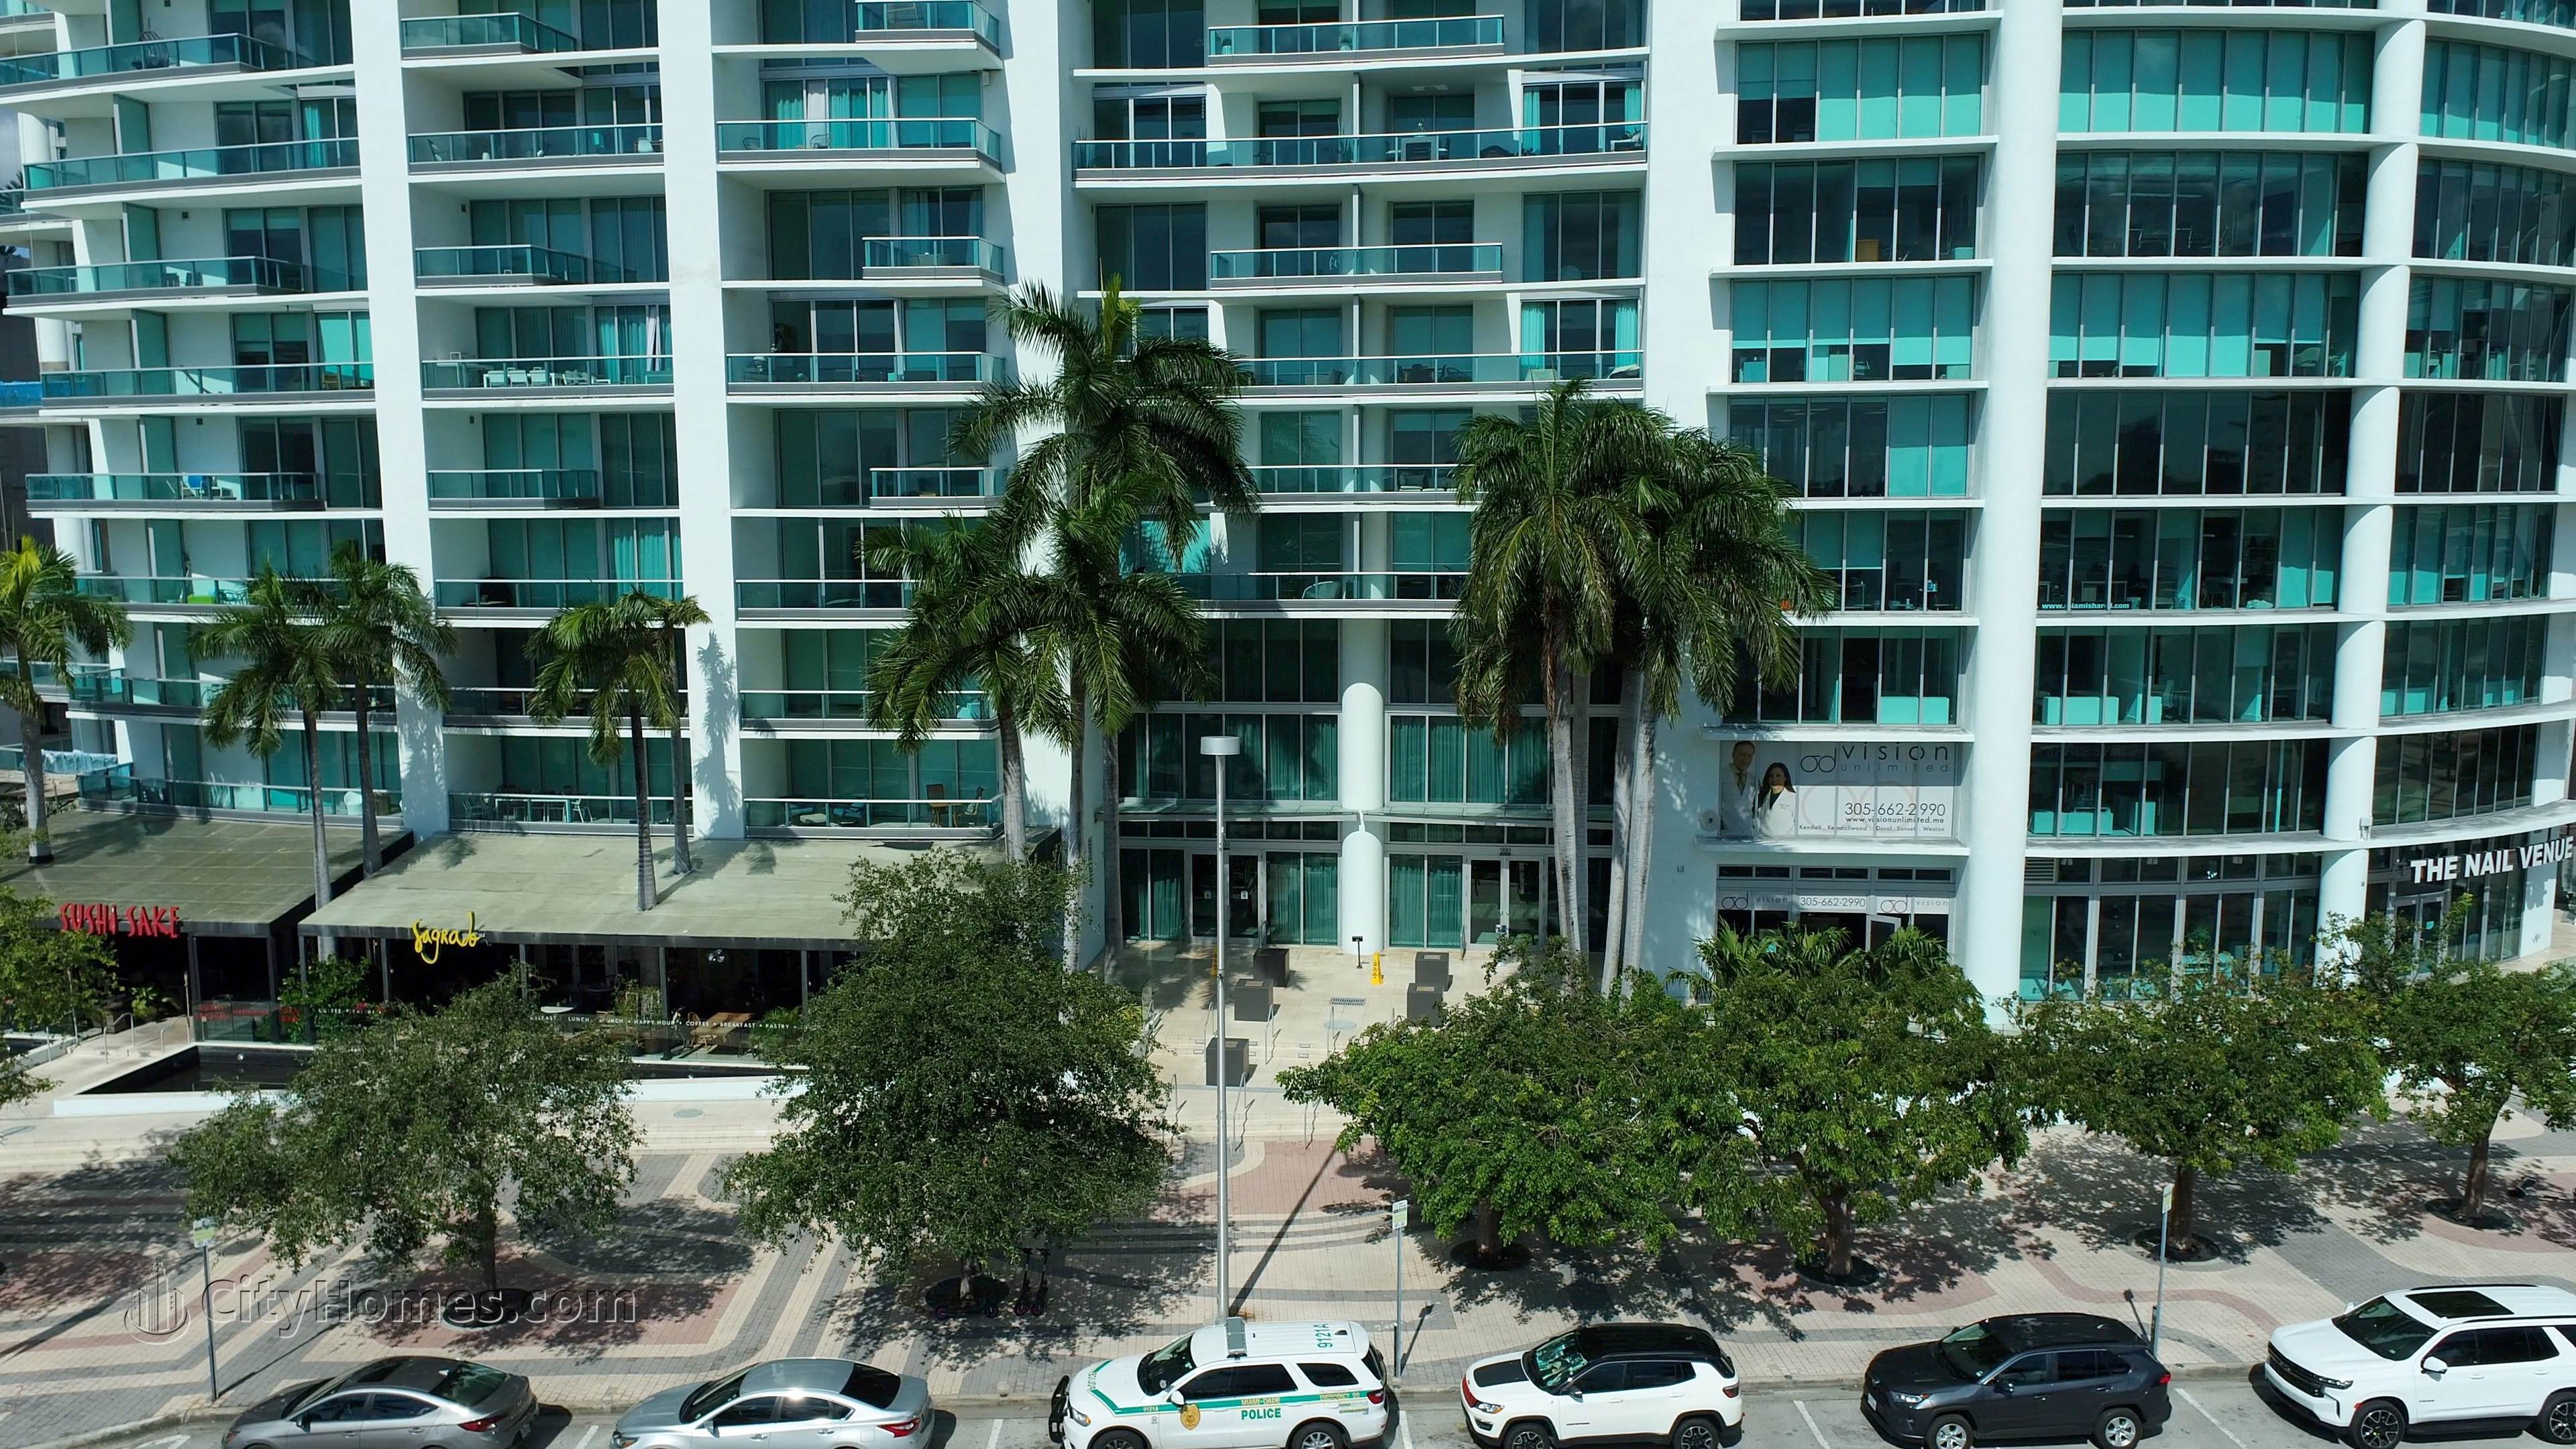 6. 900 Biscayne Bay edificio en 900 Biscayne Boulevard, Miami, FL 33132